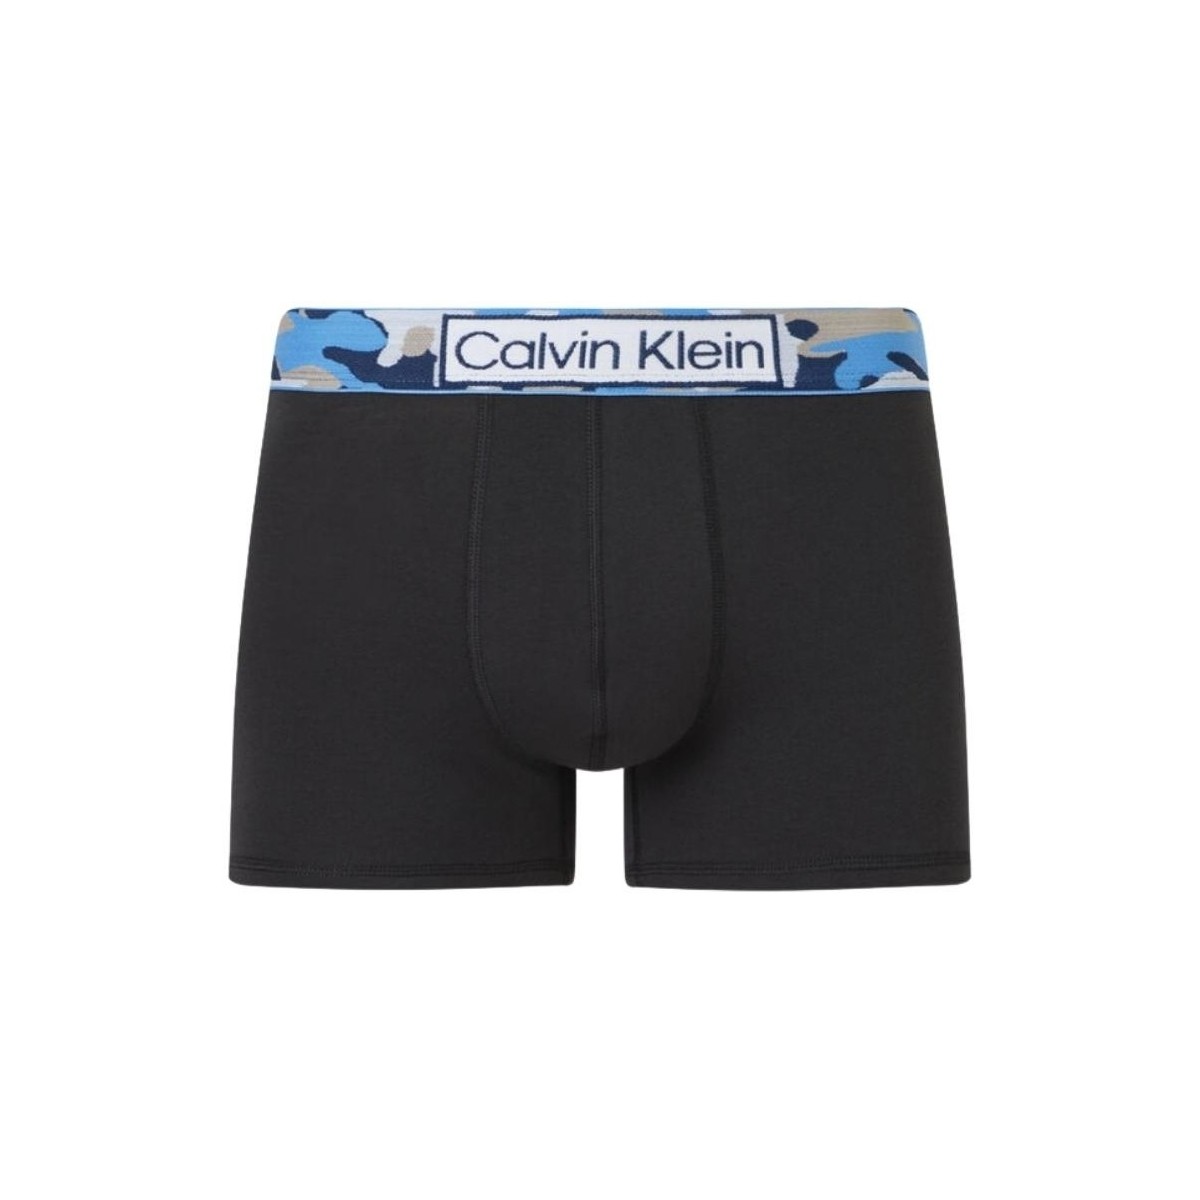 Sous-vêtements Homme Caleçons Calvin Klein Jeans Calecon  ref 55743 0YB Noir Noir